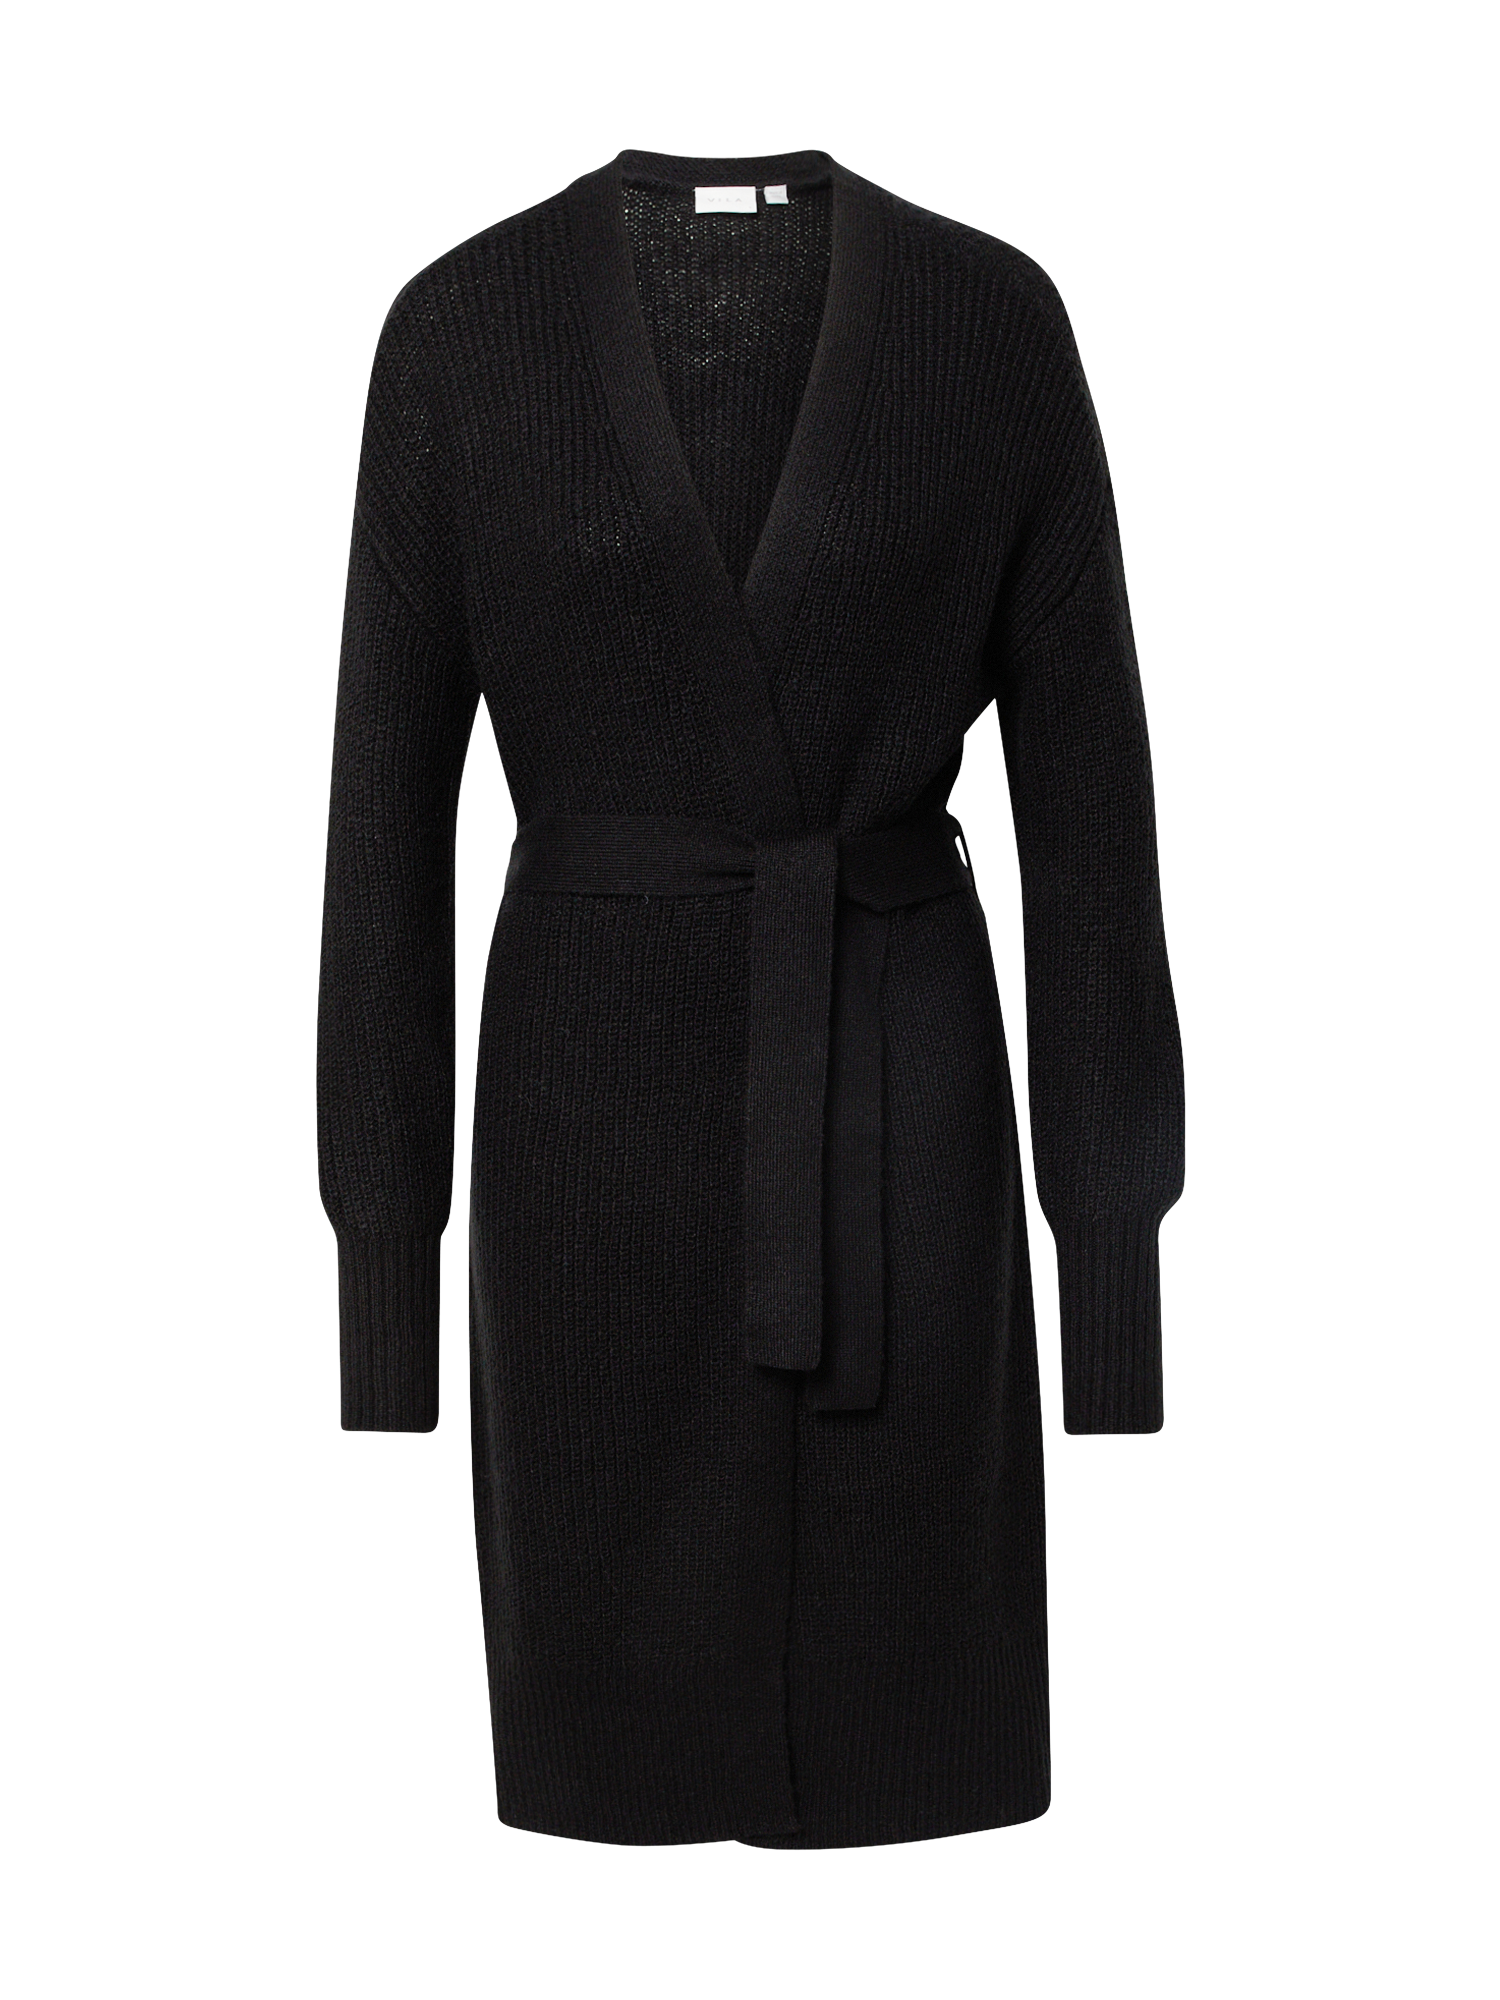 Odzież Swetry & dzianina VILA Kardigan Ytal w kolorze Czarnym 